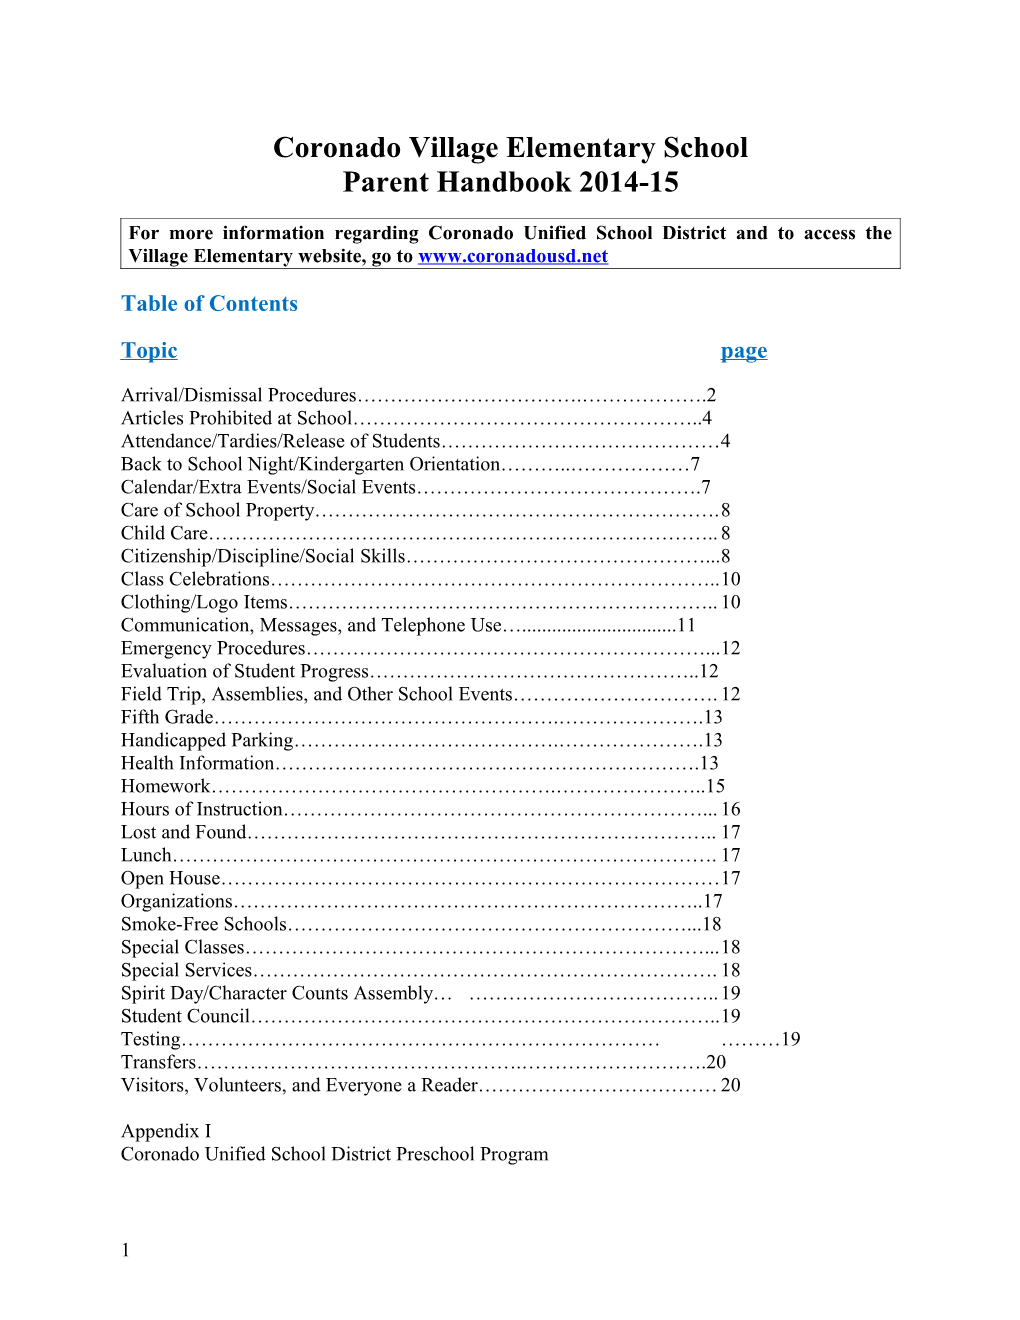 Coronado Village Elementary School Parent Handbook 2014-15